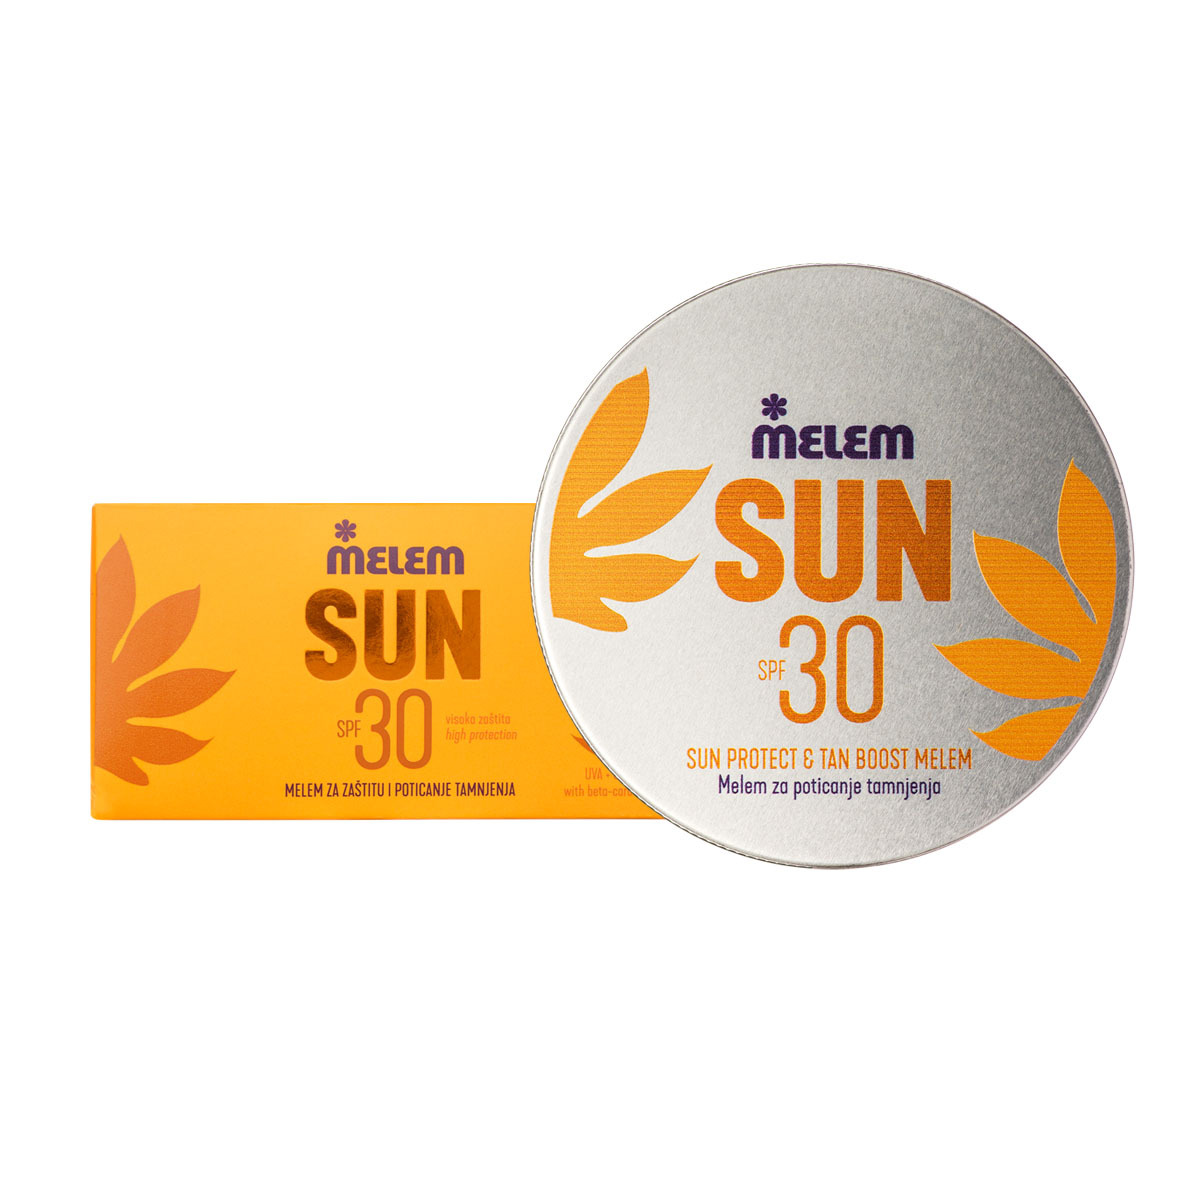 MELEM SUN Protect & Tan Boost za poticanje tamnjenja